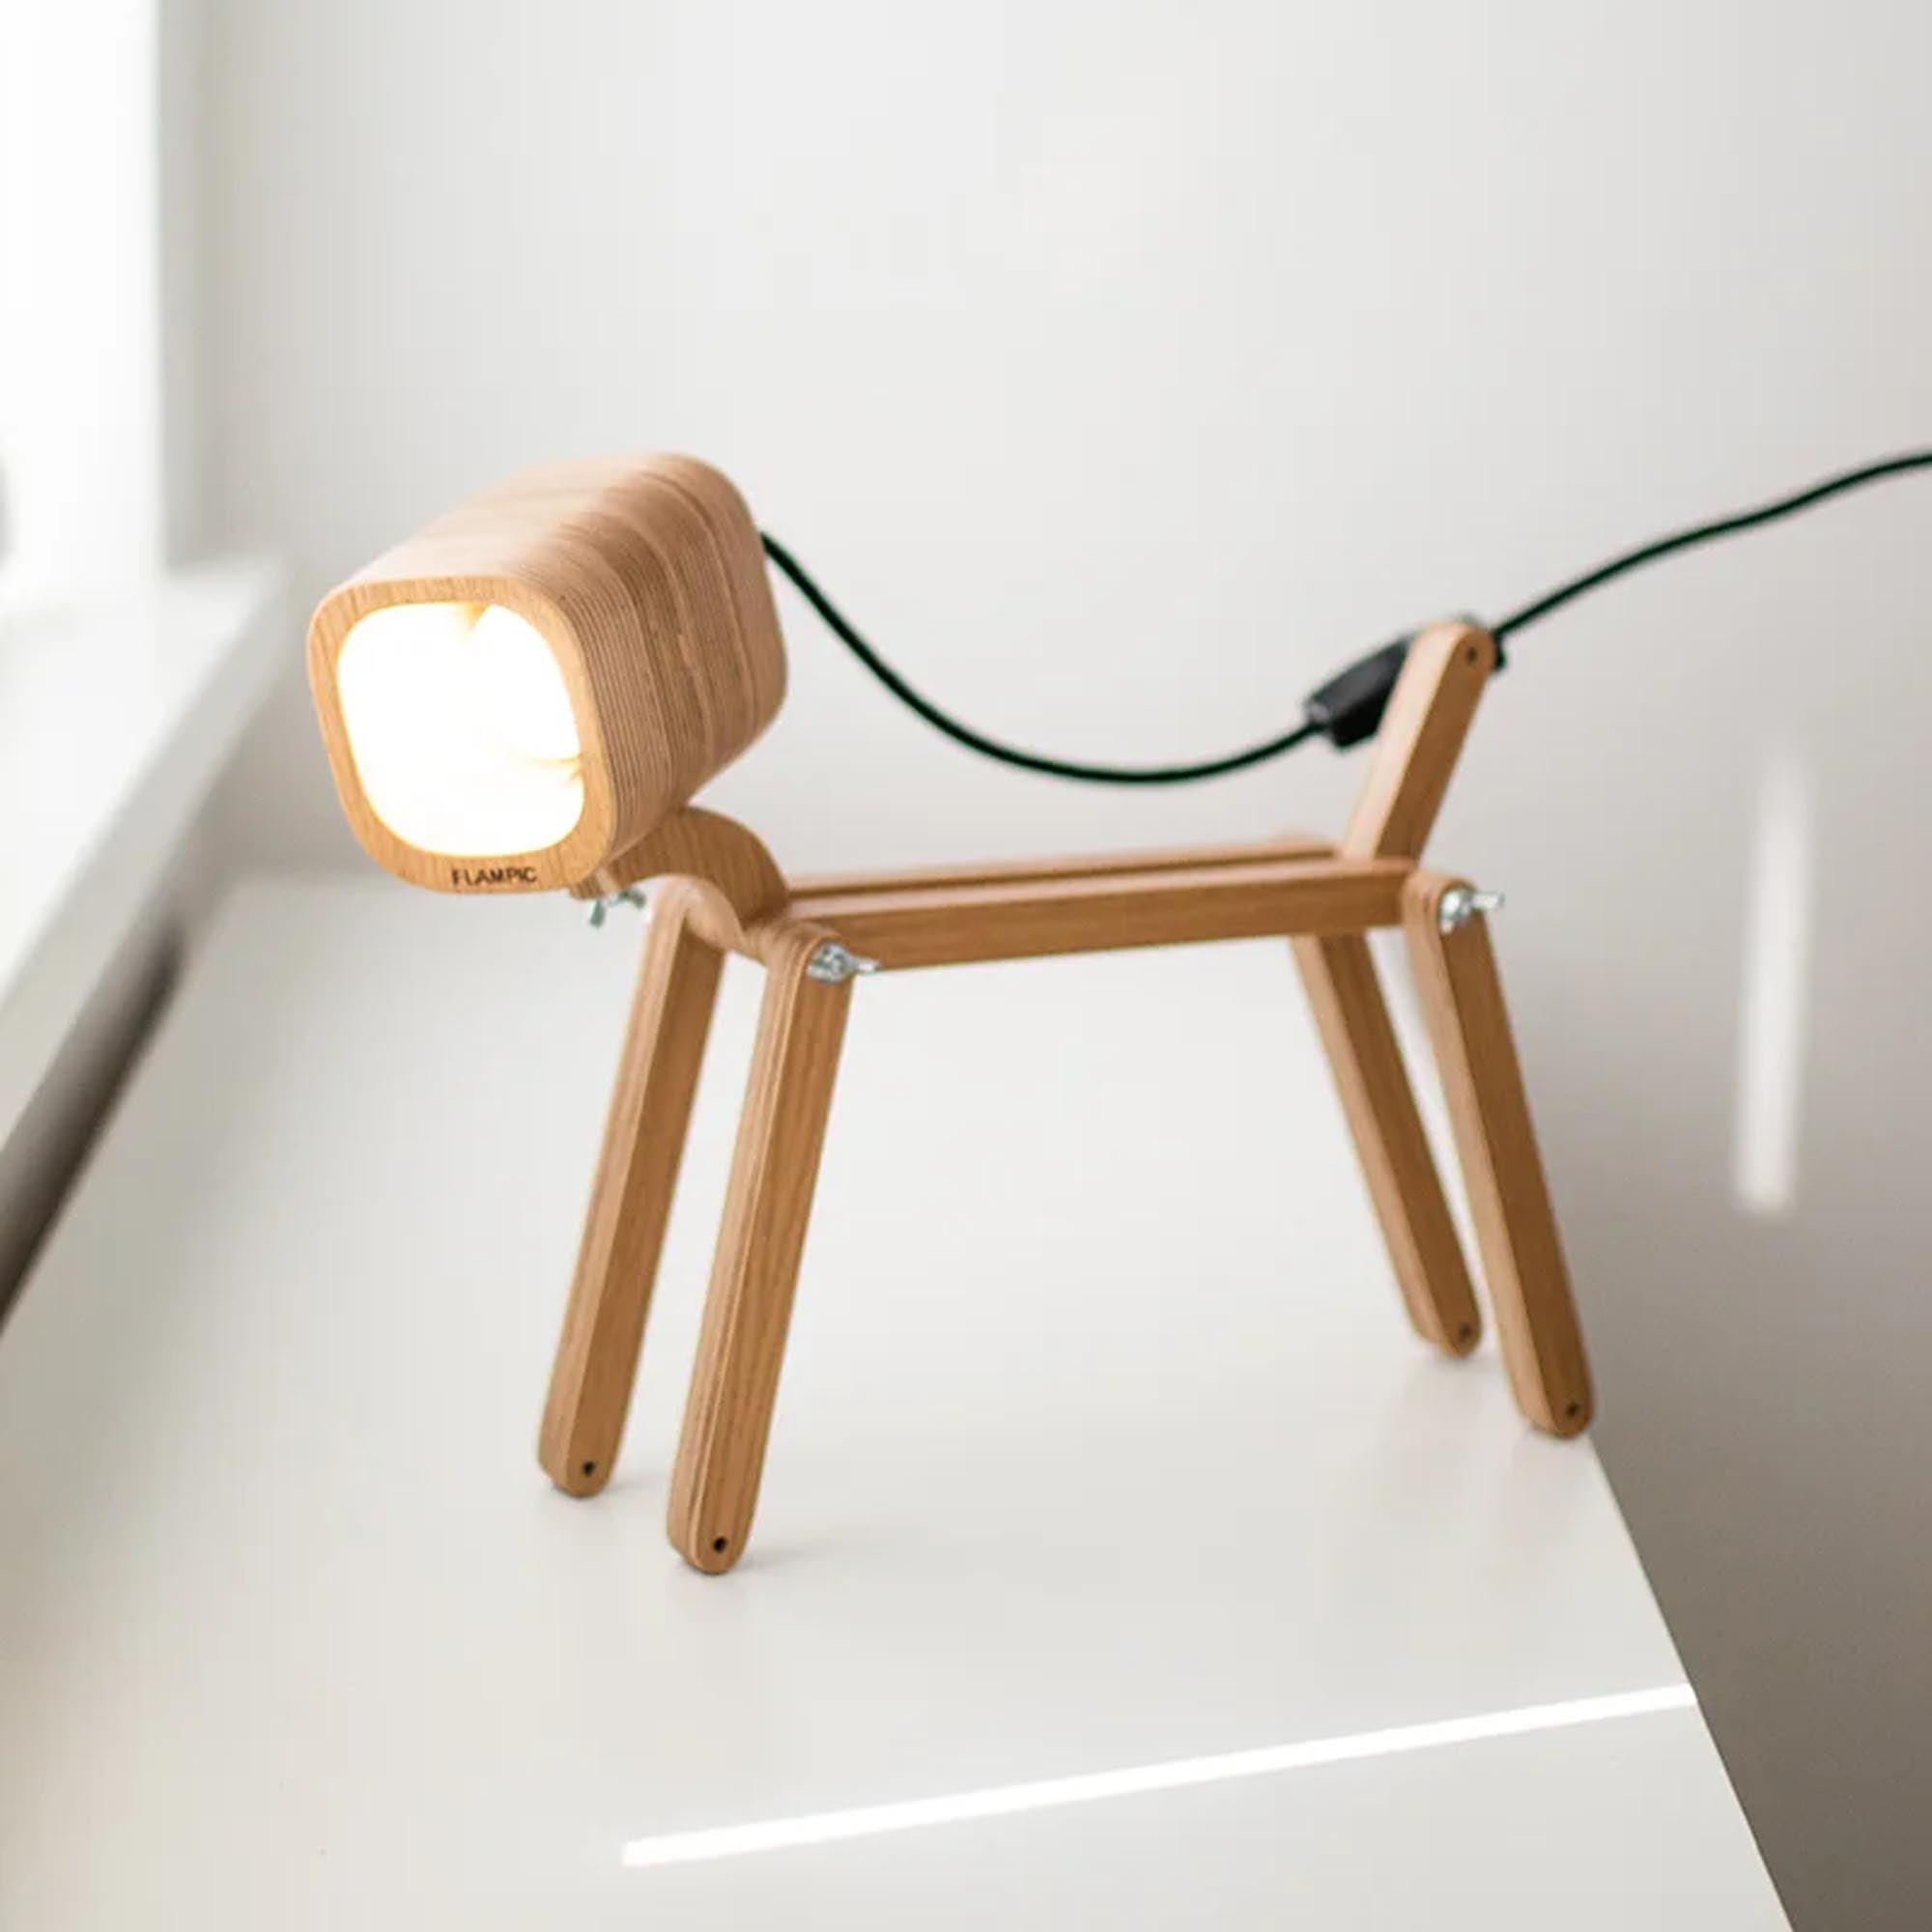 Лампа-собачка DOG LIGHT, натурального цвета